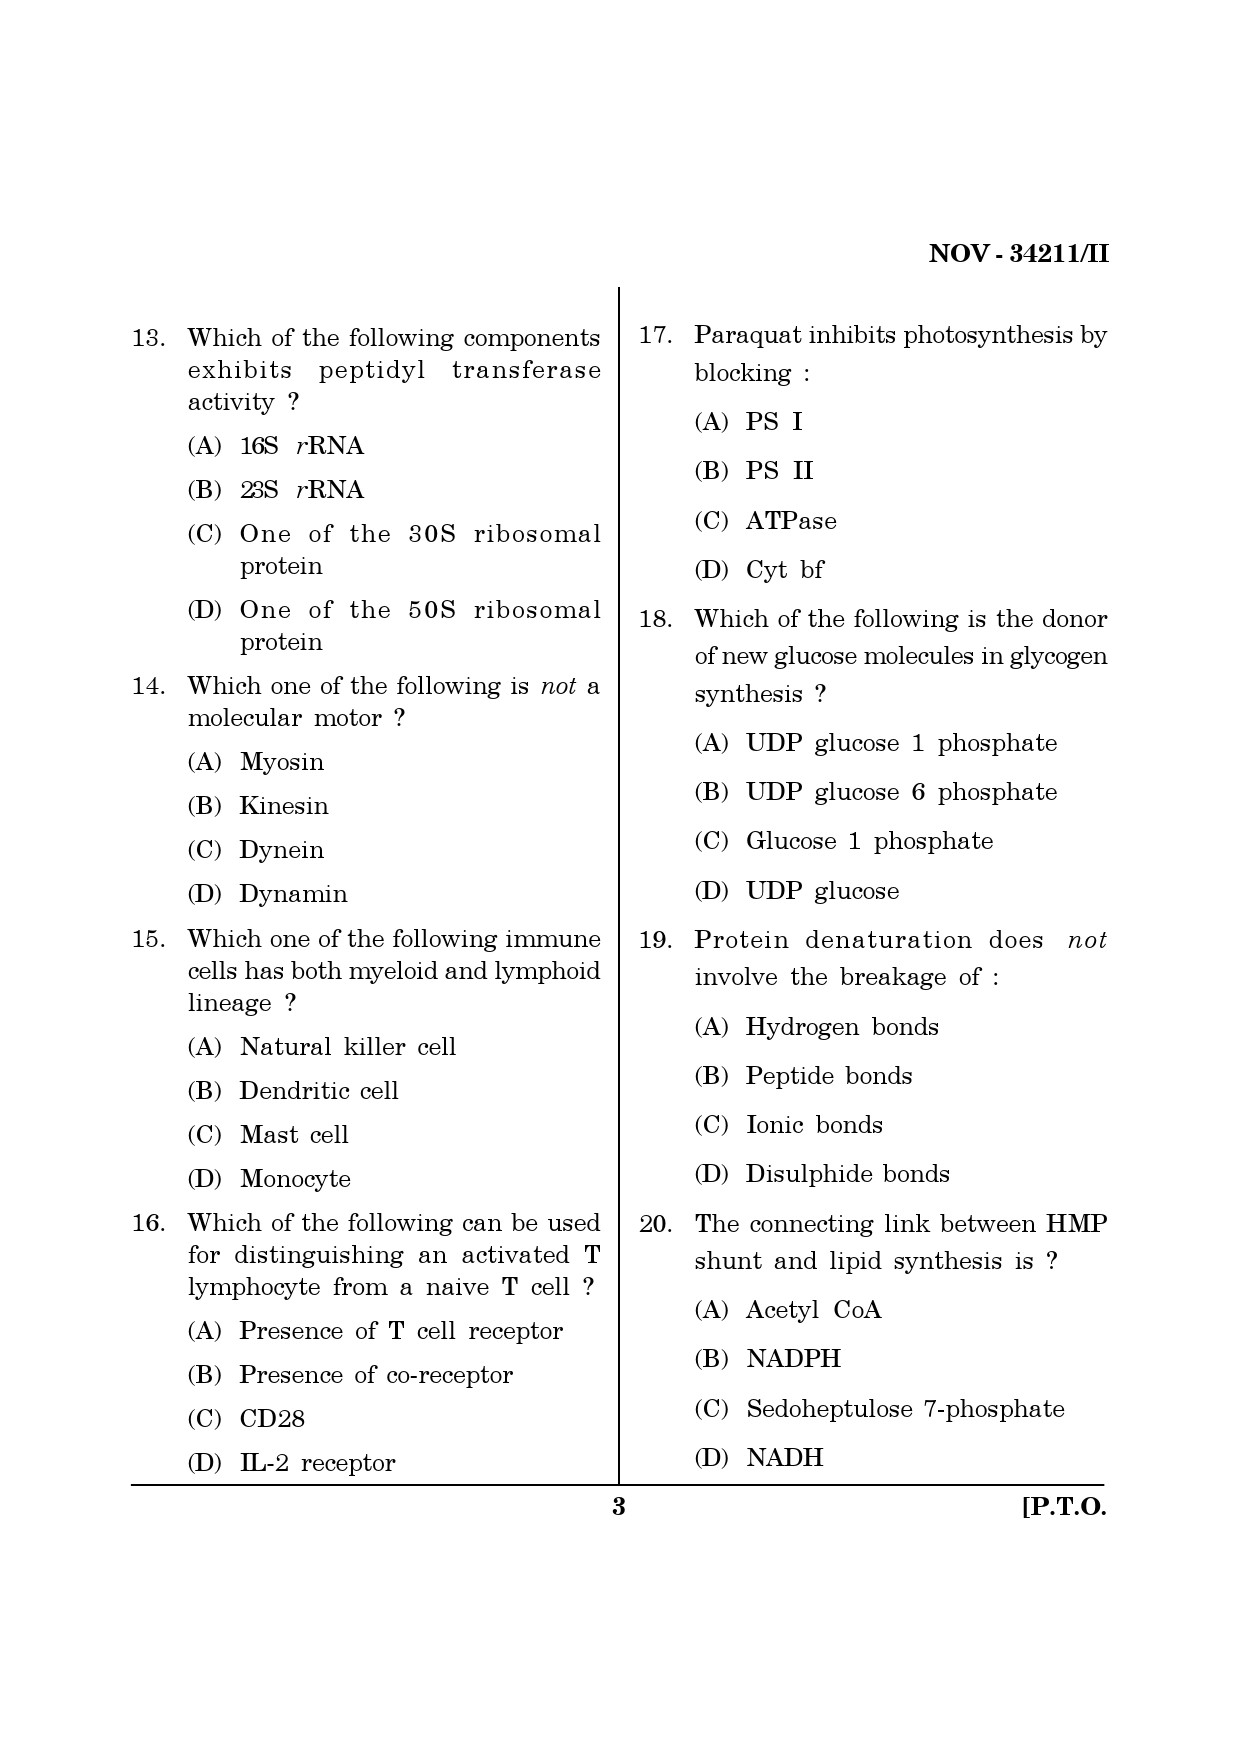 Maharashtra SET Life Sciences Question Paper II November 2011 3